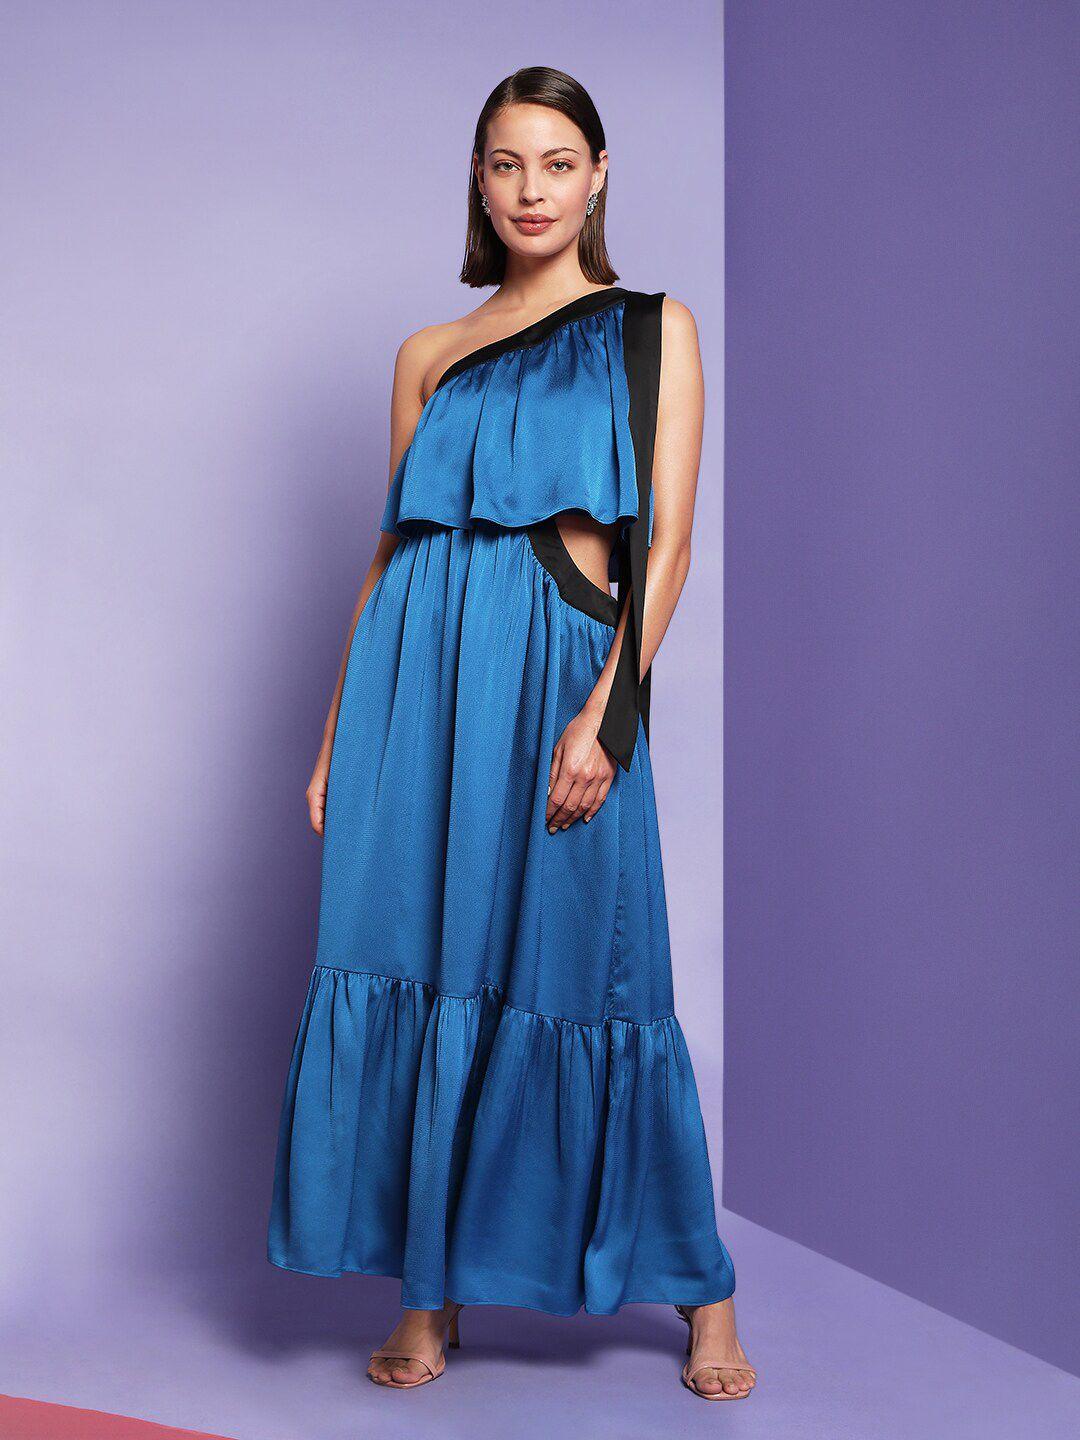 Vero Moda Marquee Collection Blue Midi Dress